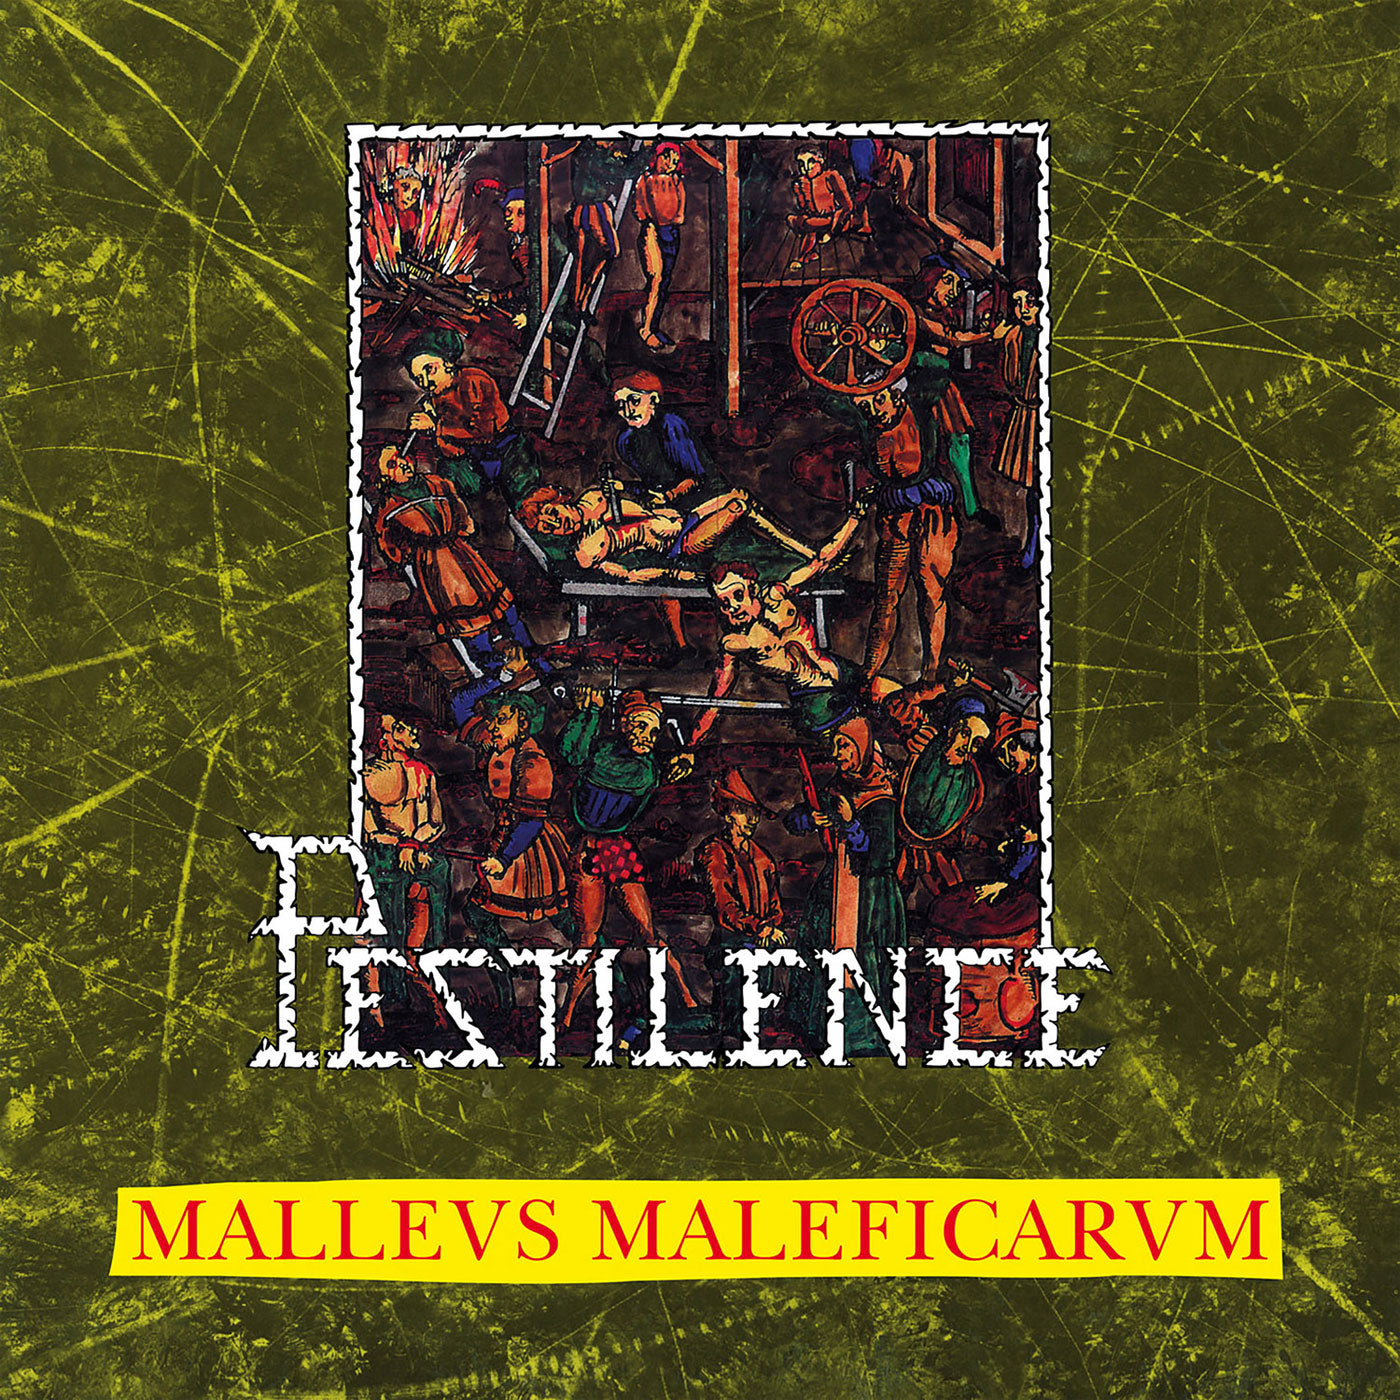 Pestilence - Malleus Maleficarum (2017 Reissue) (2CD)